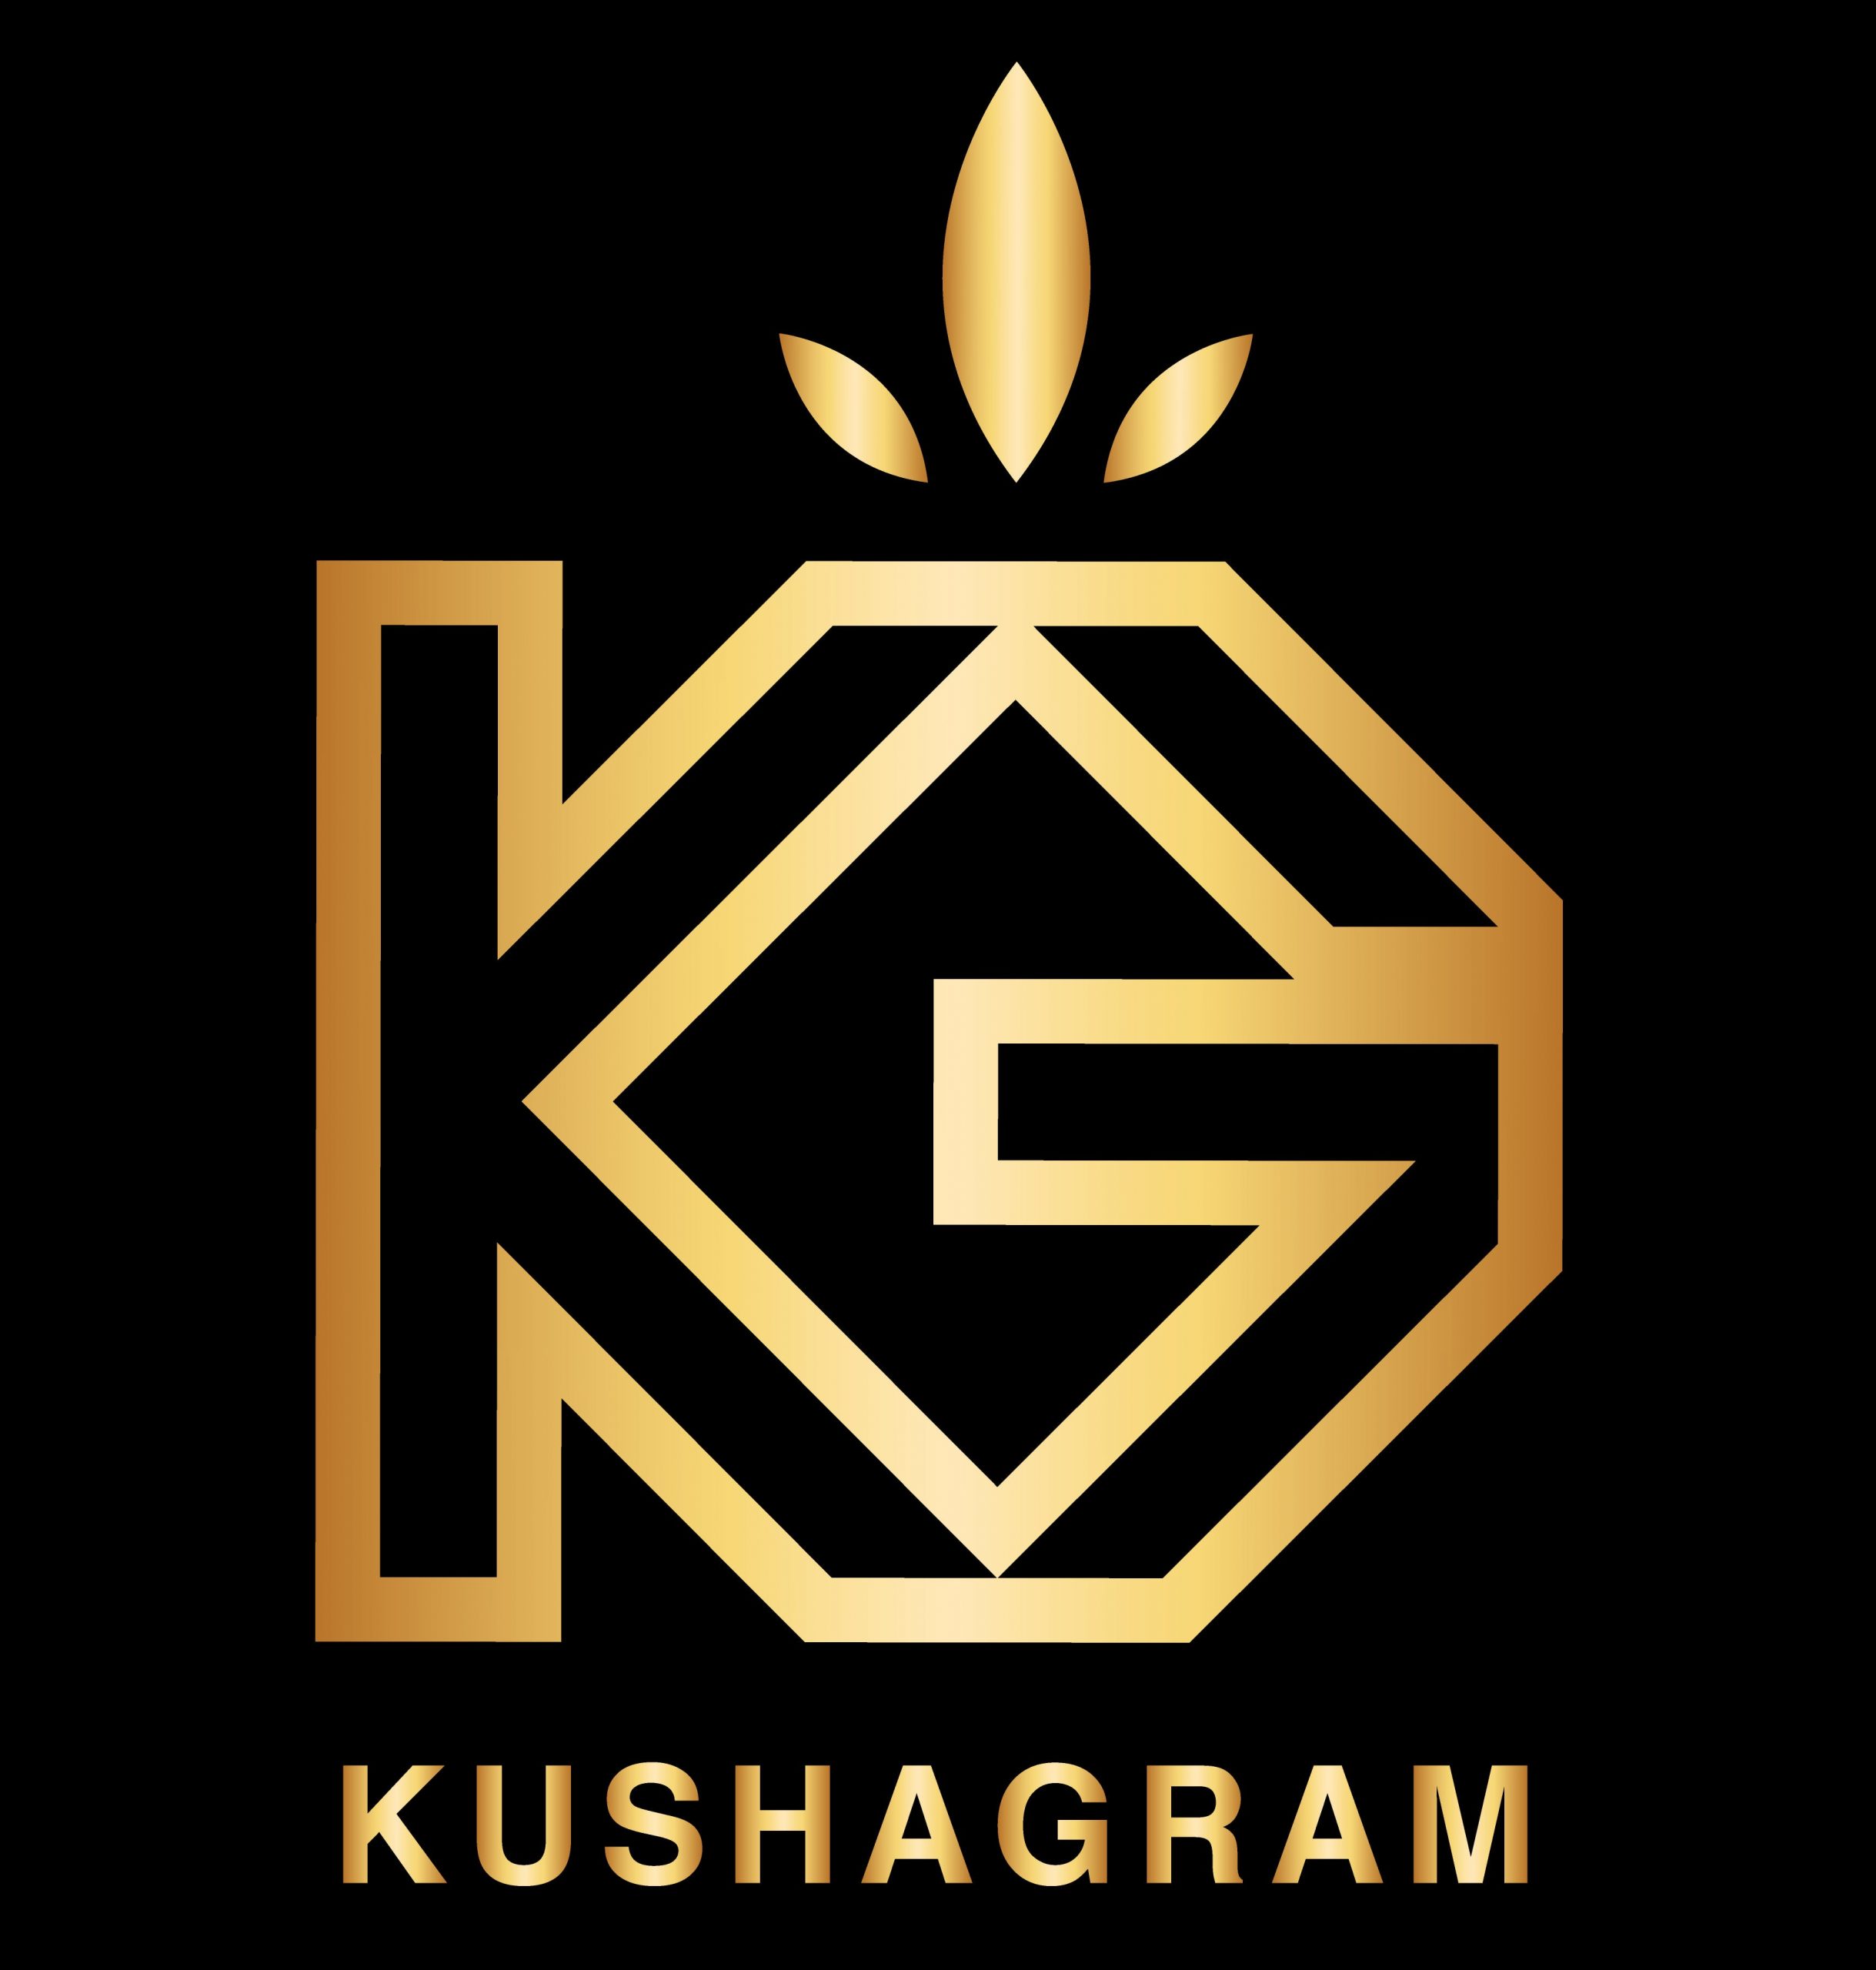 KUSHAGRAM Moods maps